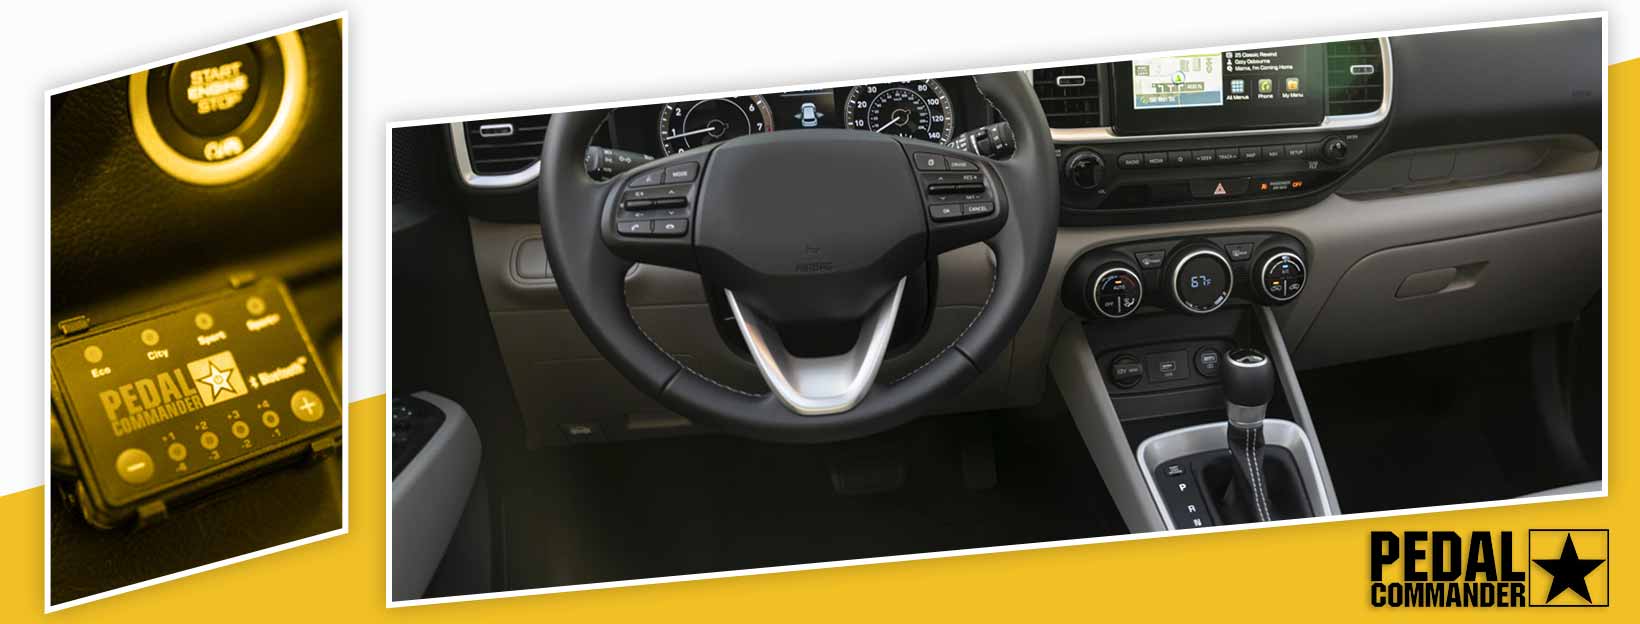 Pedal Commander for Hyundai Venue - interior